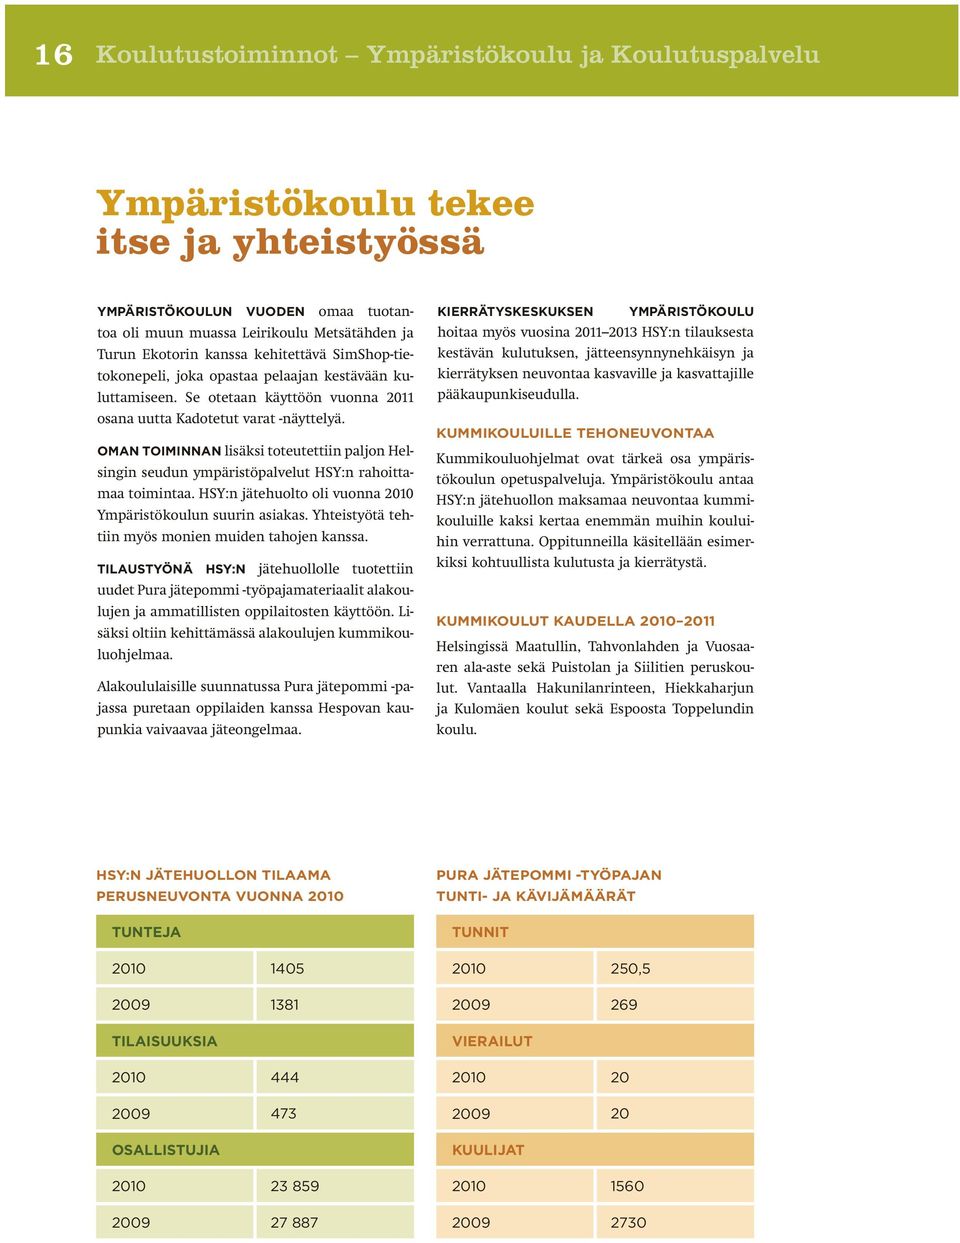 OMAN TOIMINNAN lisäksi toteutettiin paljon Helsingin seudun ympäristöpalvelut HSY:n rahoittamaa toimintaa. HSY:n jätehuolto oli vuonna 2010 Ympäristökoulun suurin asiakas.